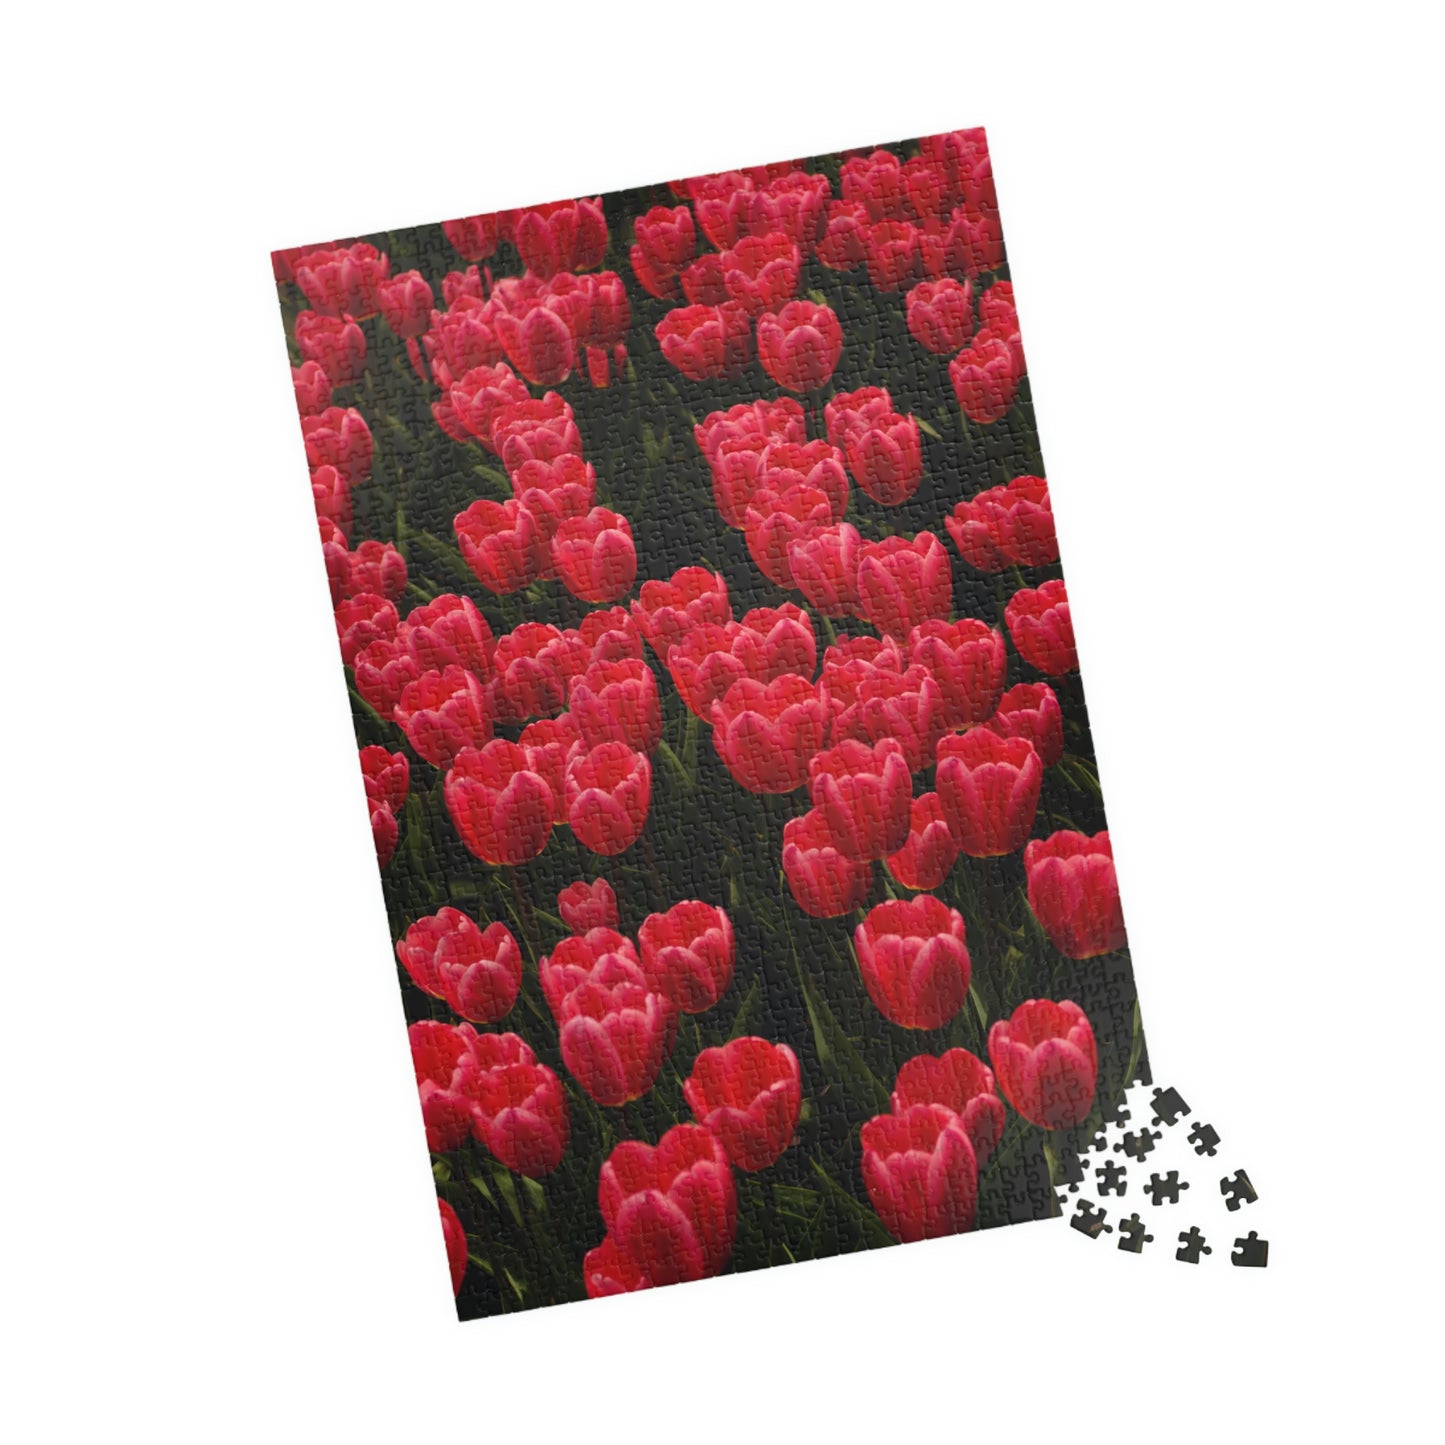 Flowers 24 Puzzle (110, 252, 500, 1014-piece)